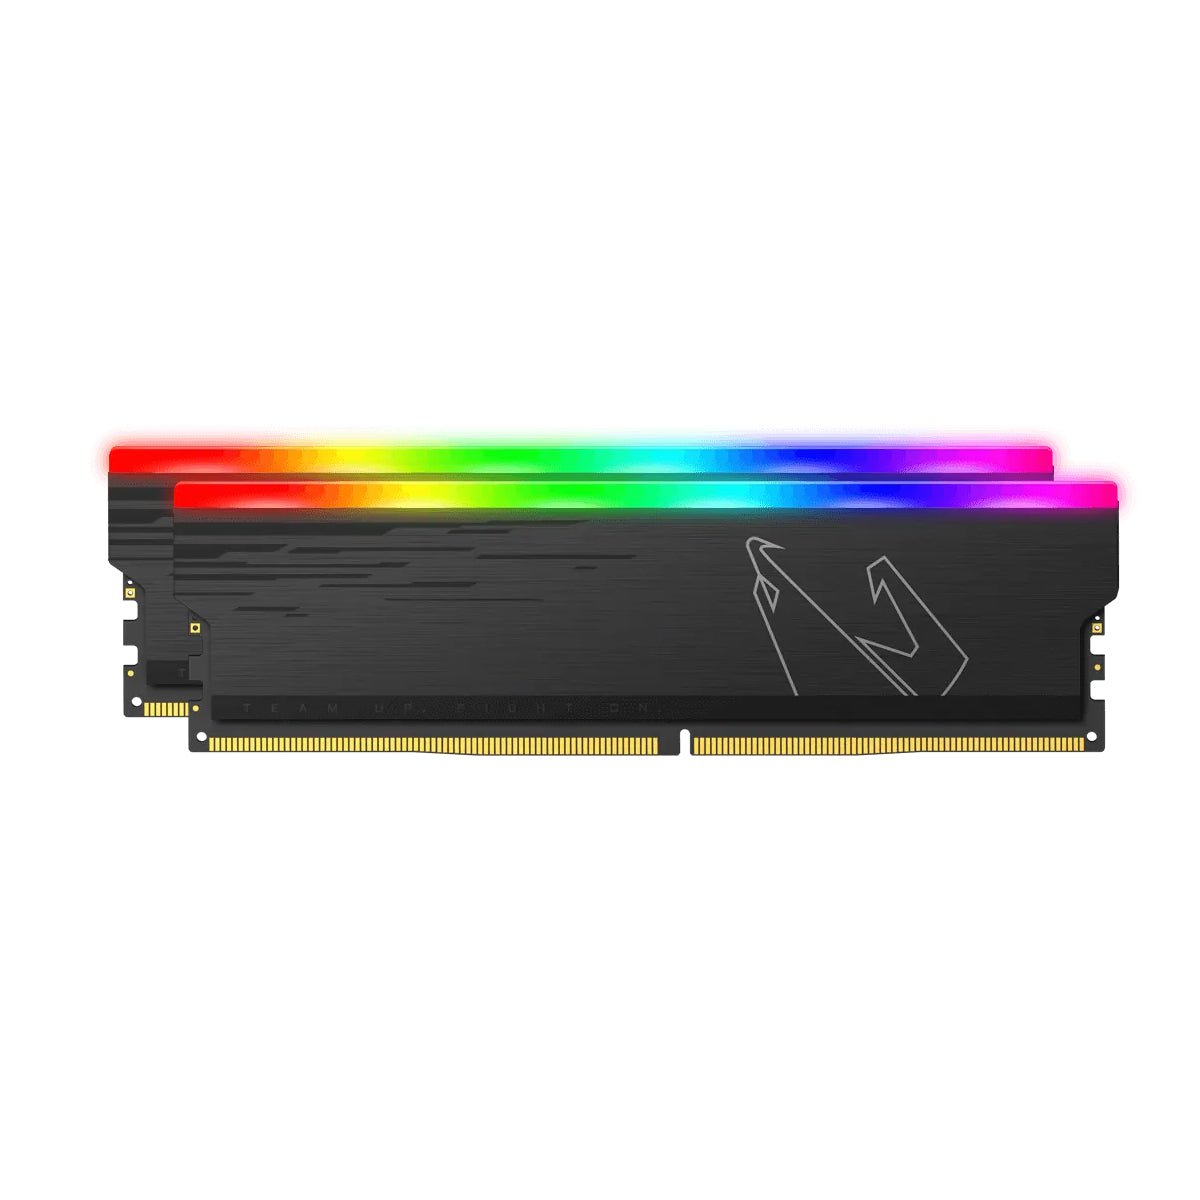 Gigabyte Aorus RGB Memory DDR4 16GB (2x8GB) 4400MHz - Gray - Store 974 | ستور ٩٧٤